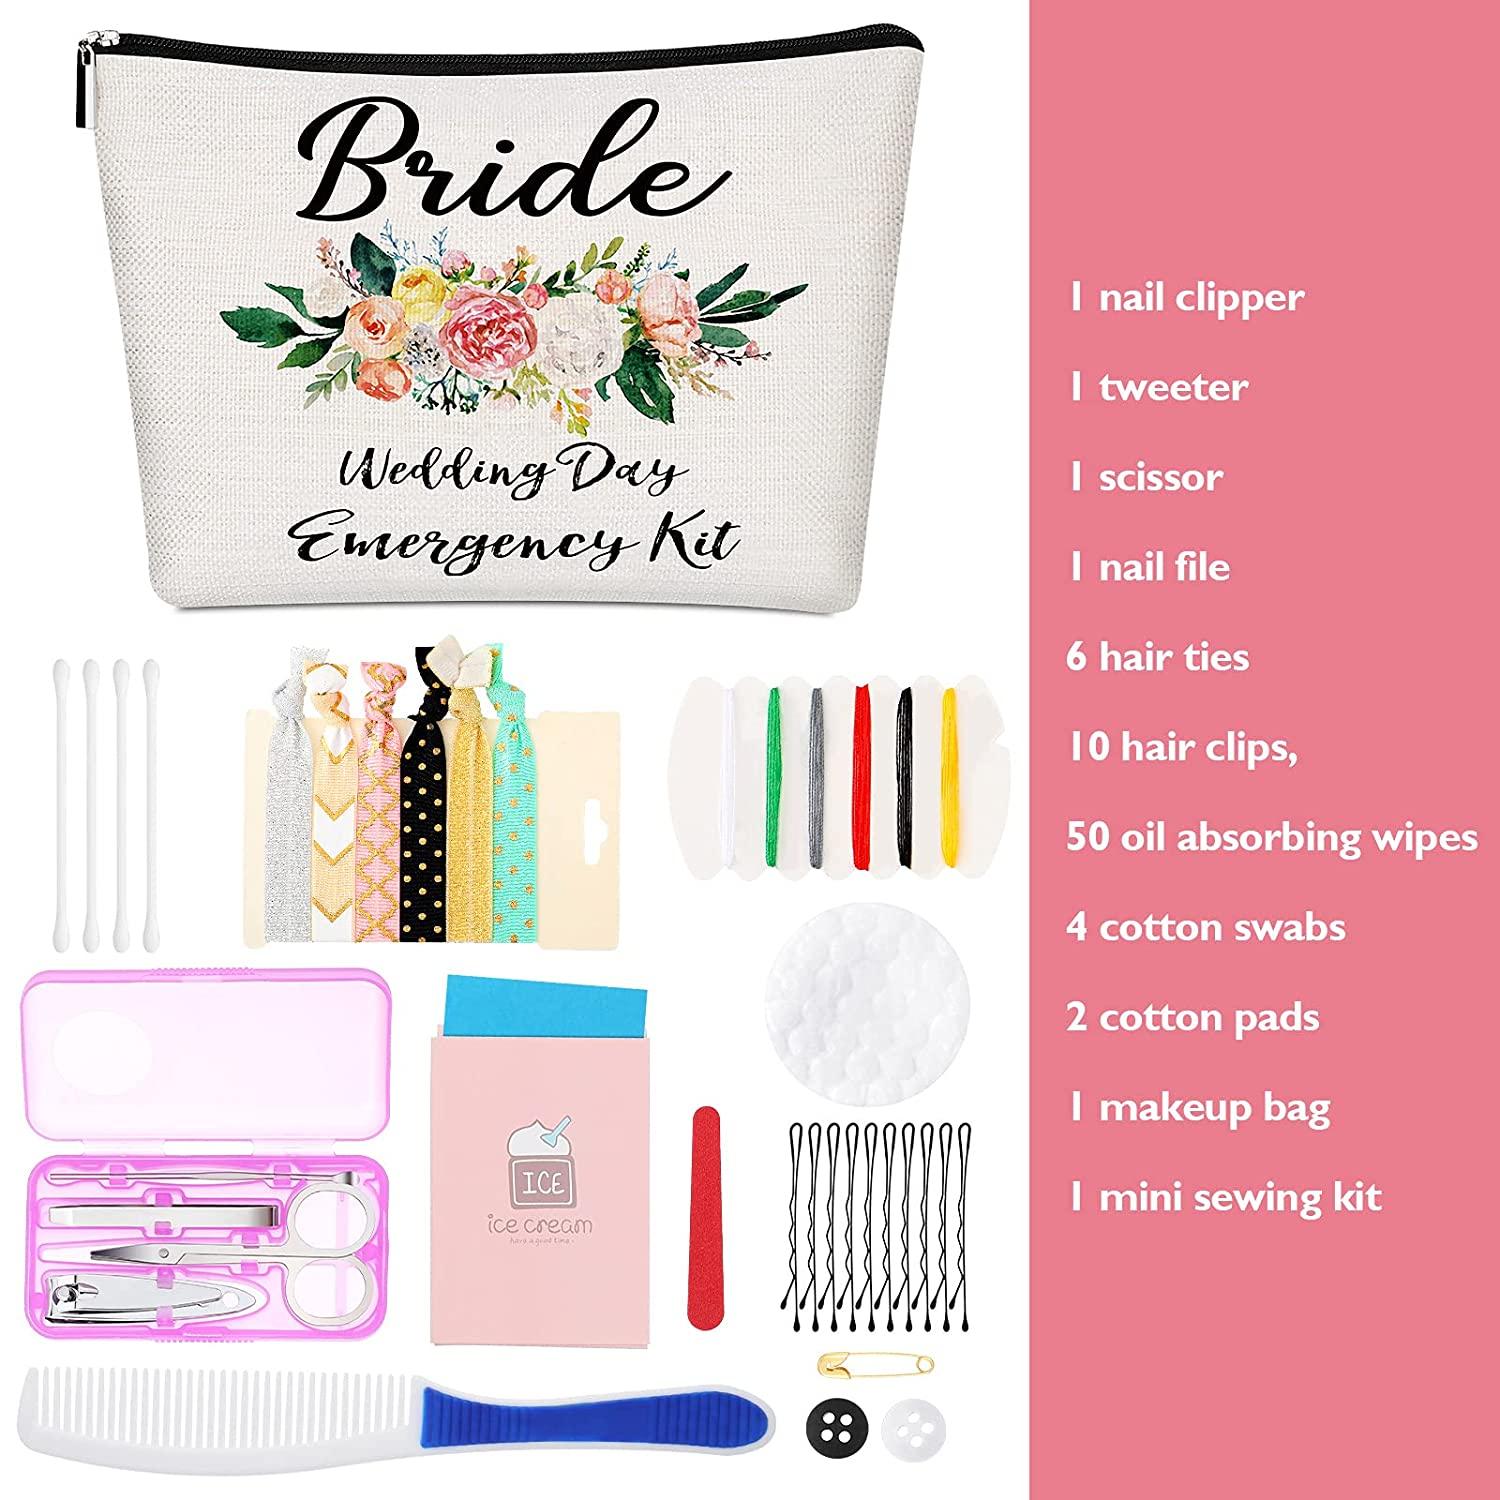 Wedding Day Emergency Kit: A Handy List - Gems Wedding Supplies